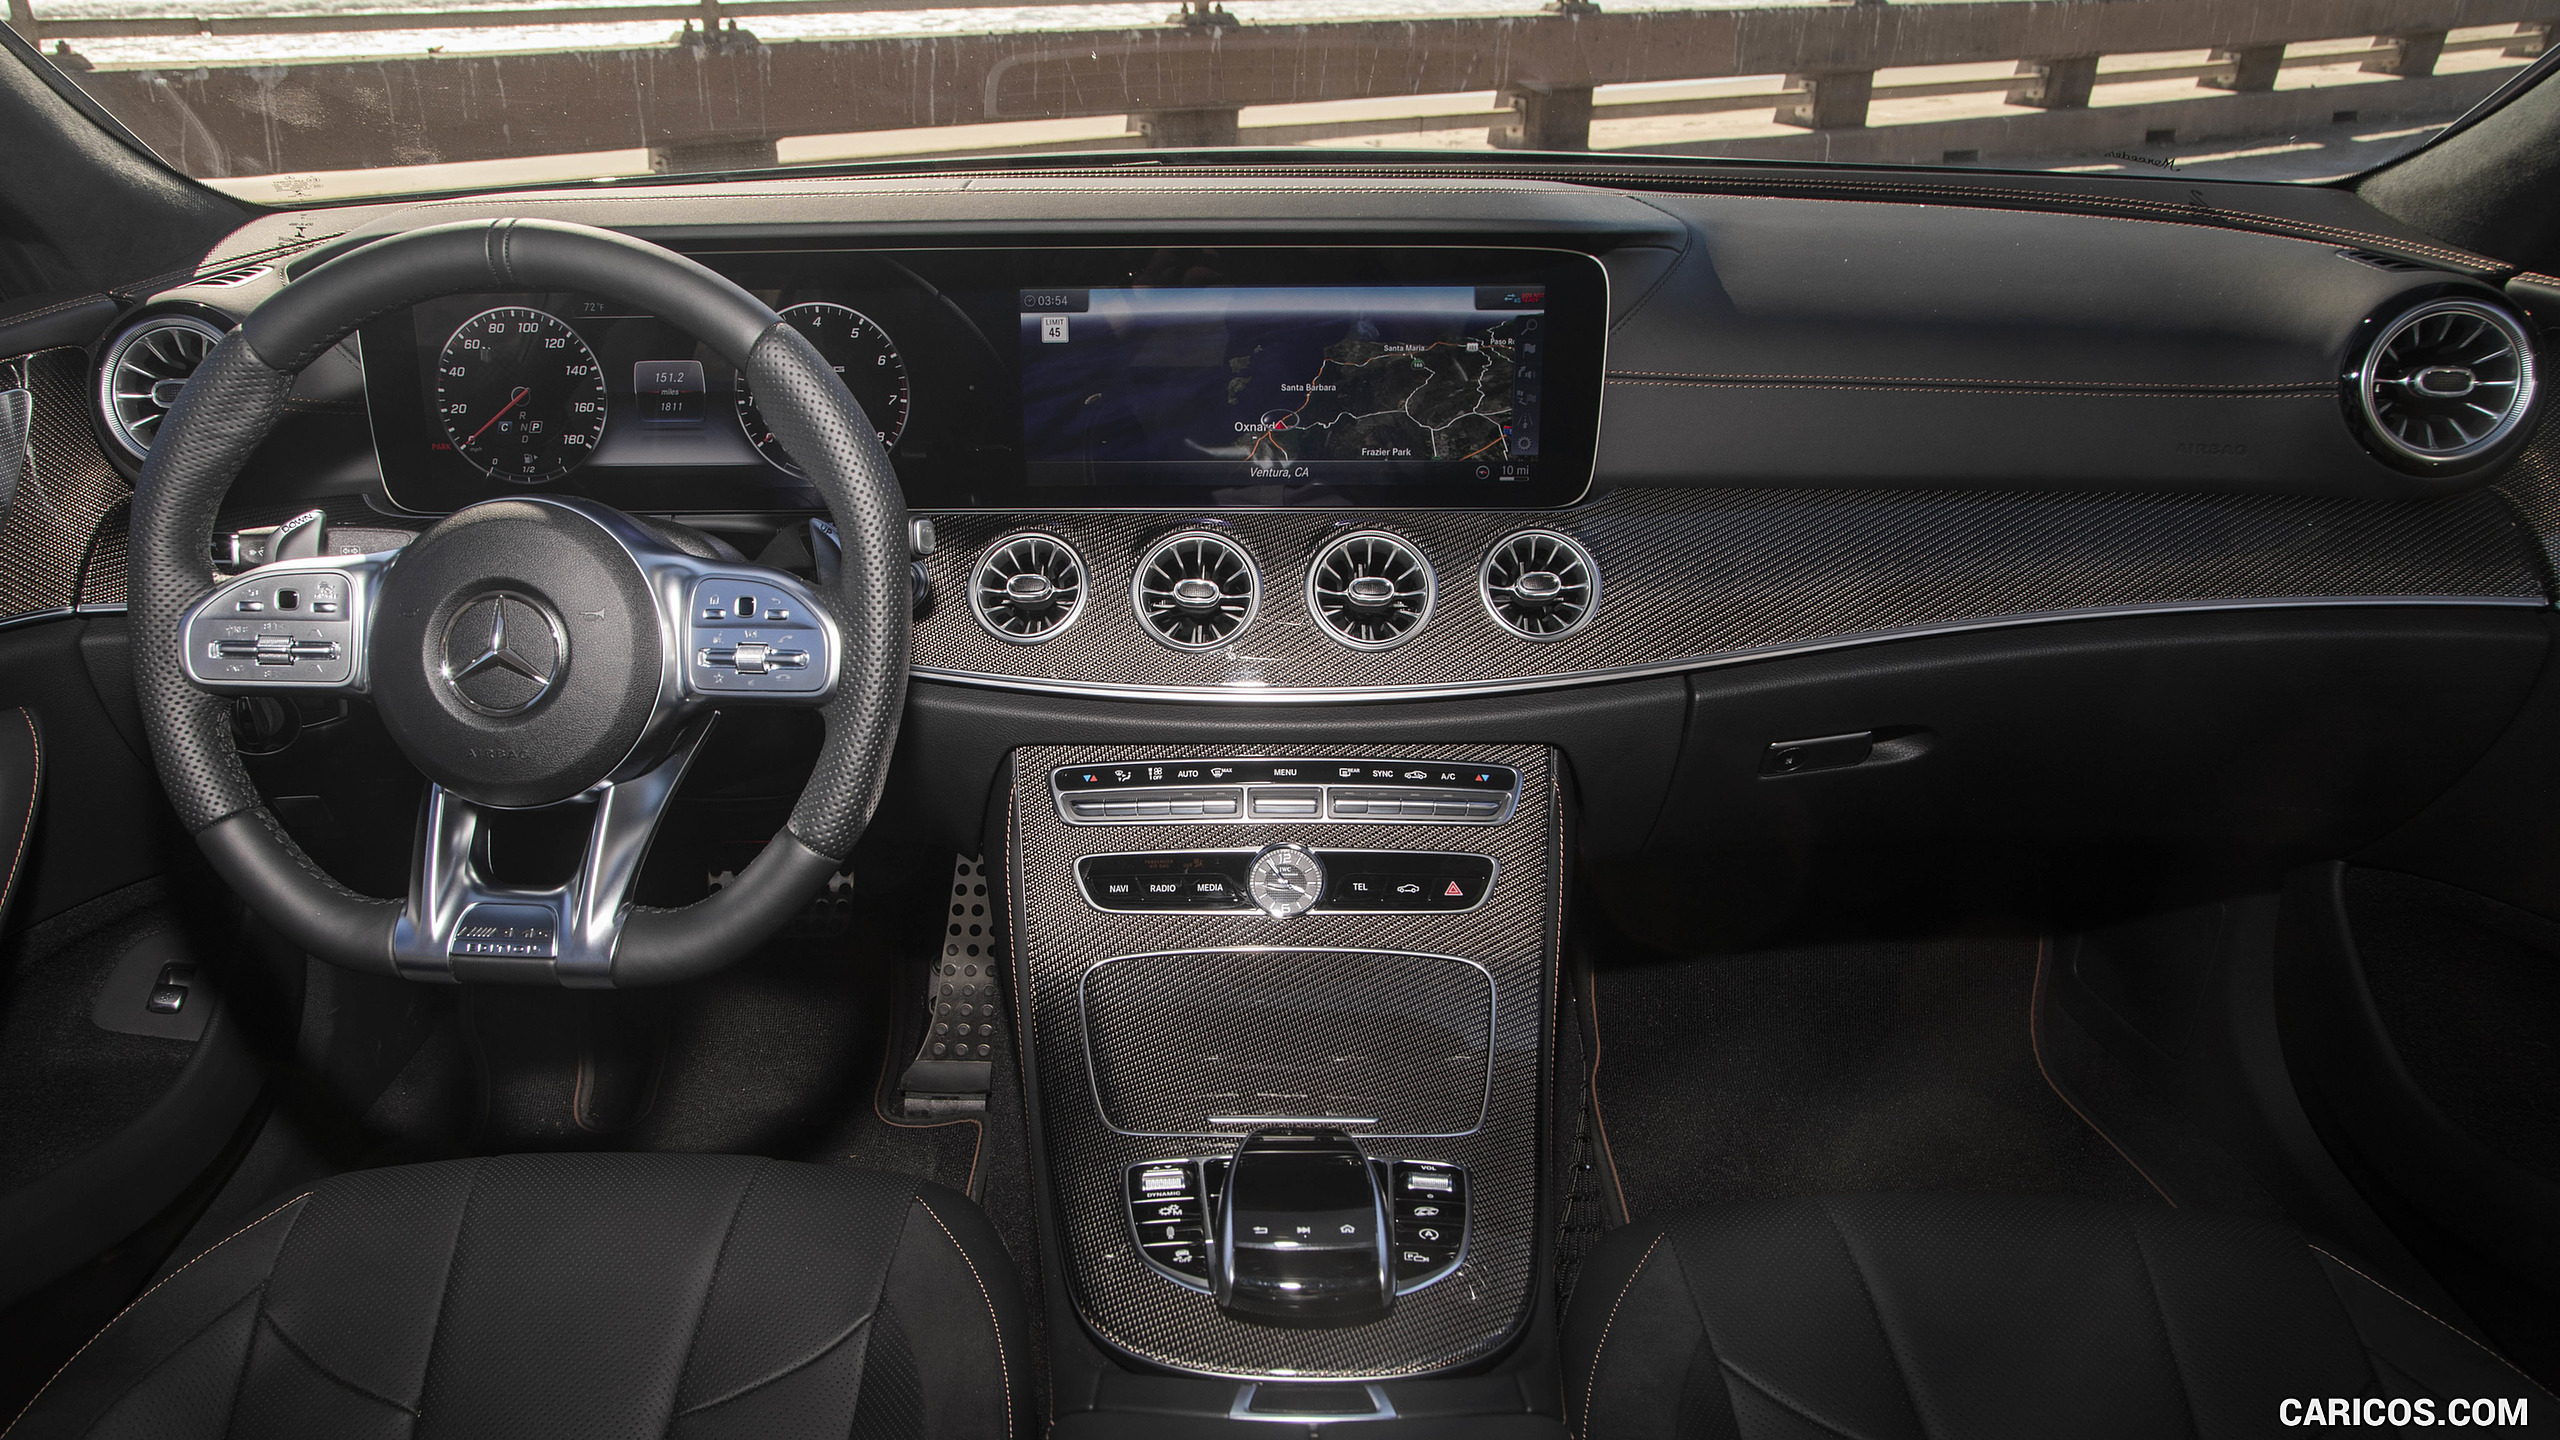 2019 Mercedes-AMG CLS 53 4MATIC+ (US-Spec) - Interior, Cockpit, #69 of 84